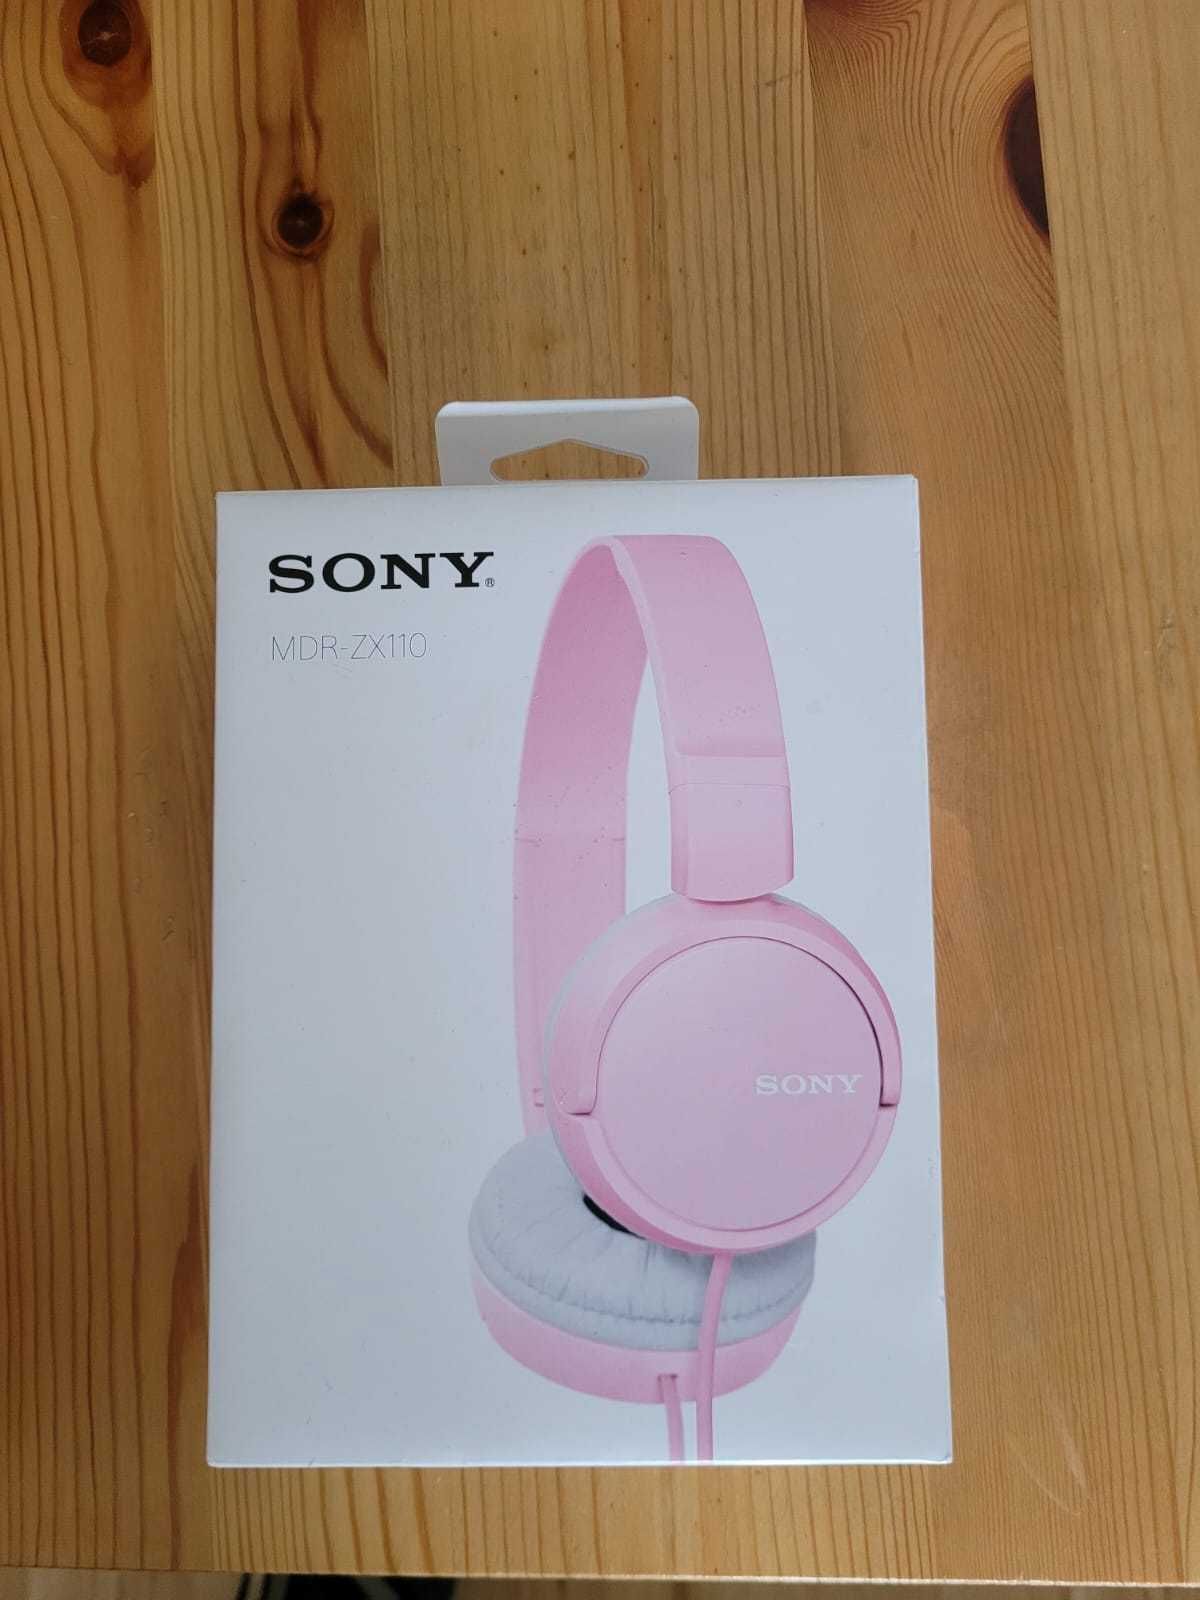 Sony MDR-ZX110 składnae słuchawki nauszne, różowe